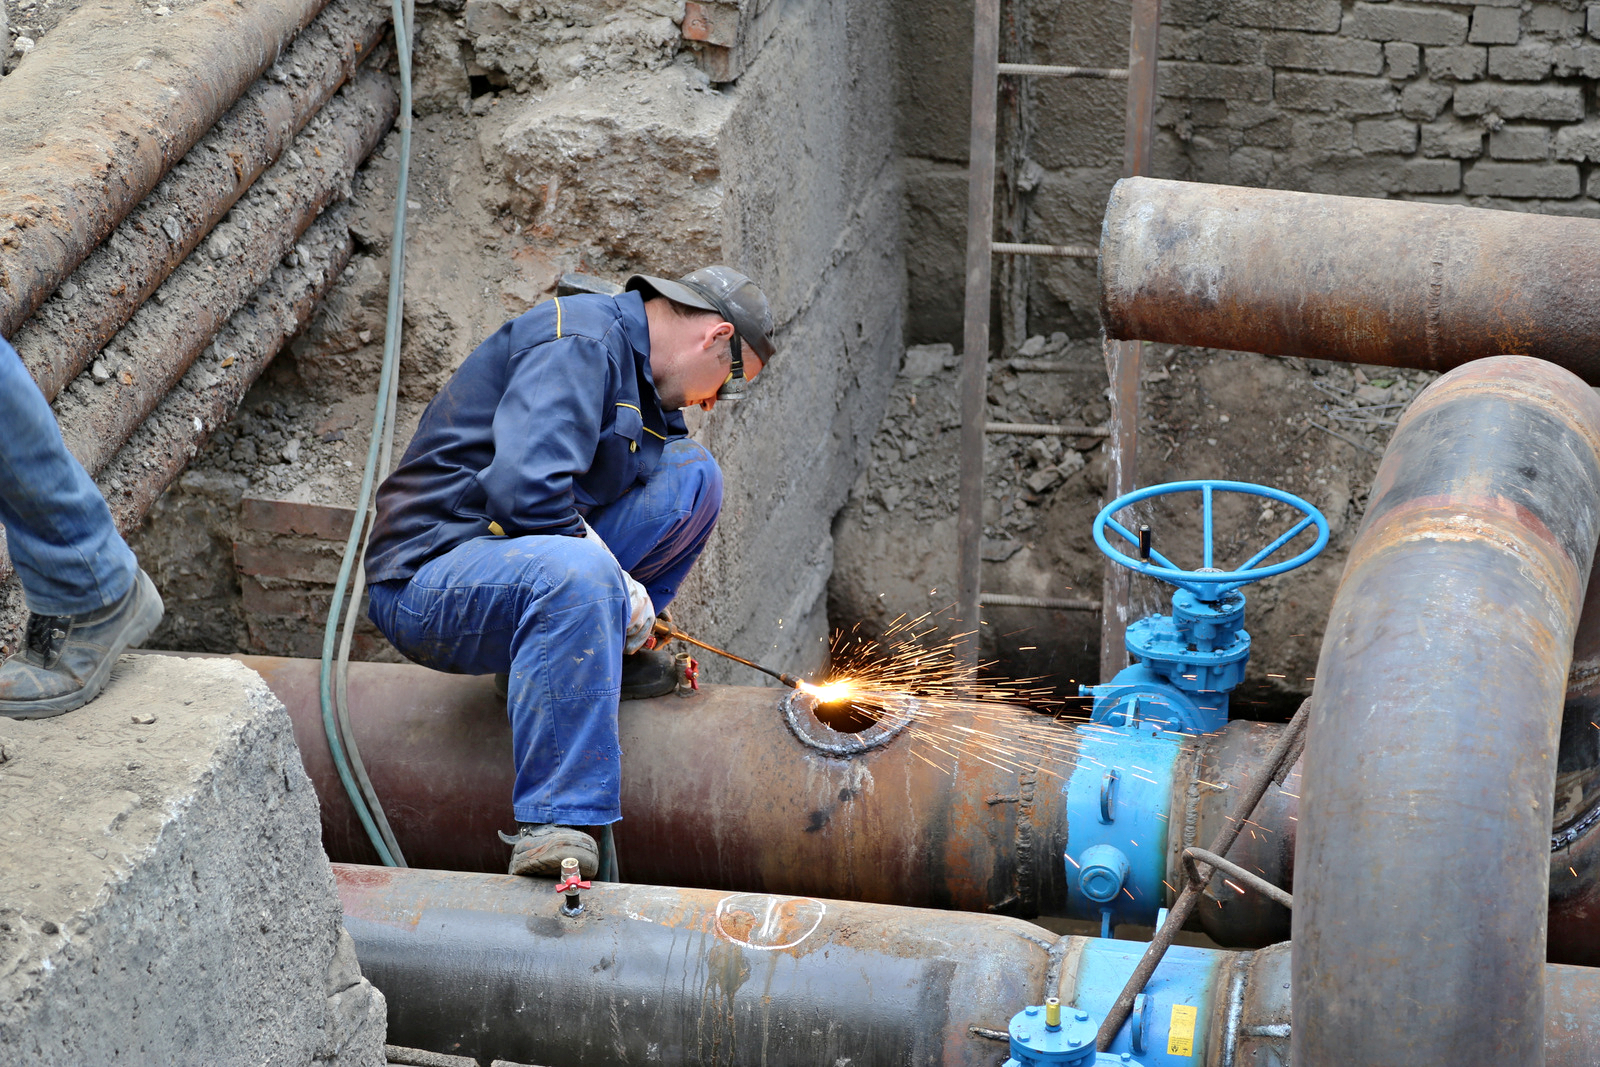 После майских праздников в Самаре планируются временные отключения горячей воды в связи с профилактикой оборудования